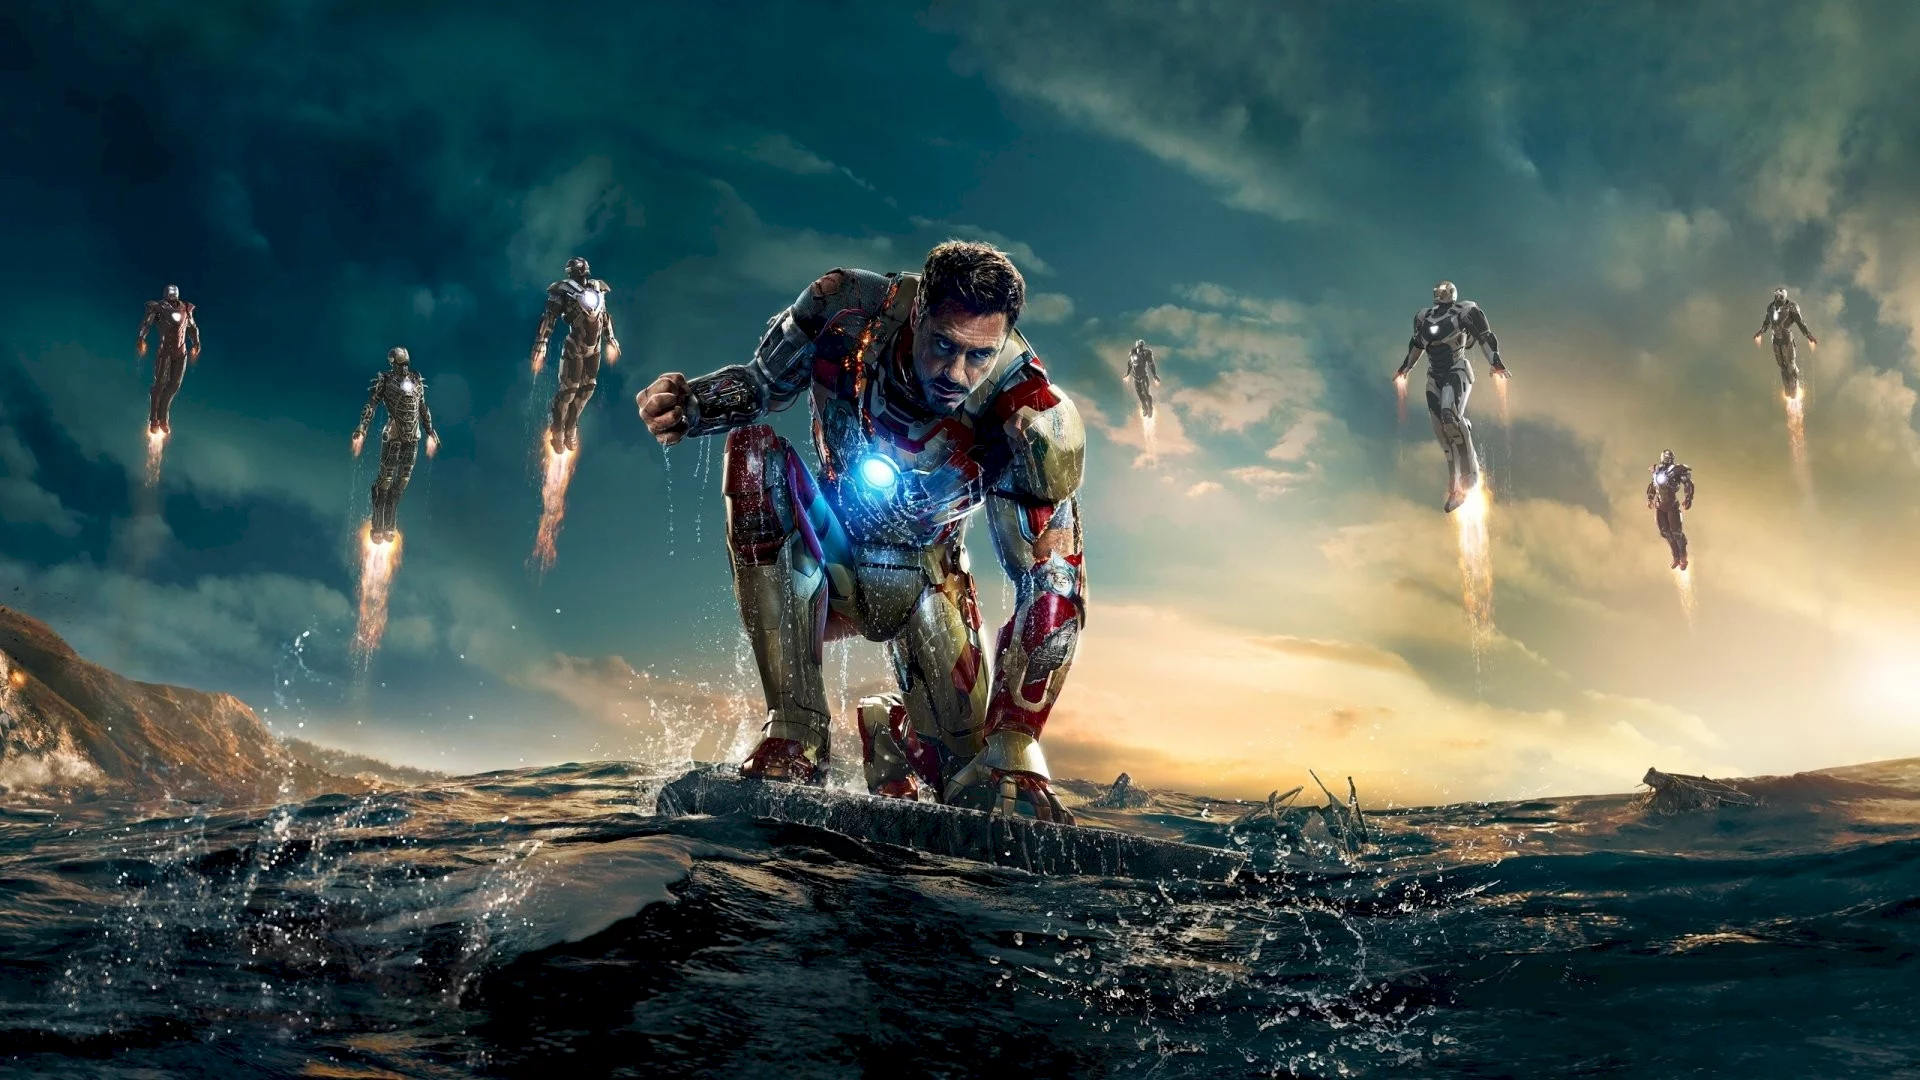 Photo du film : Iron Man 3